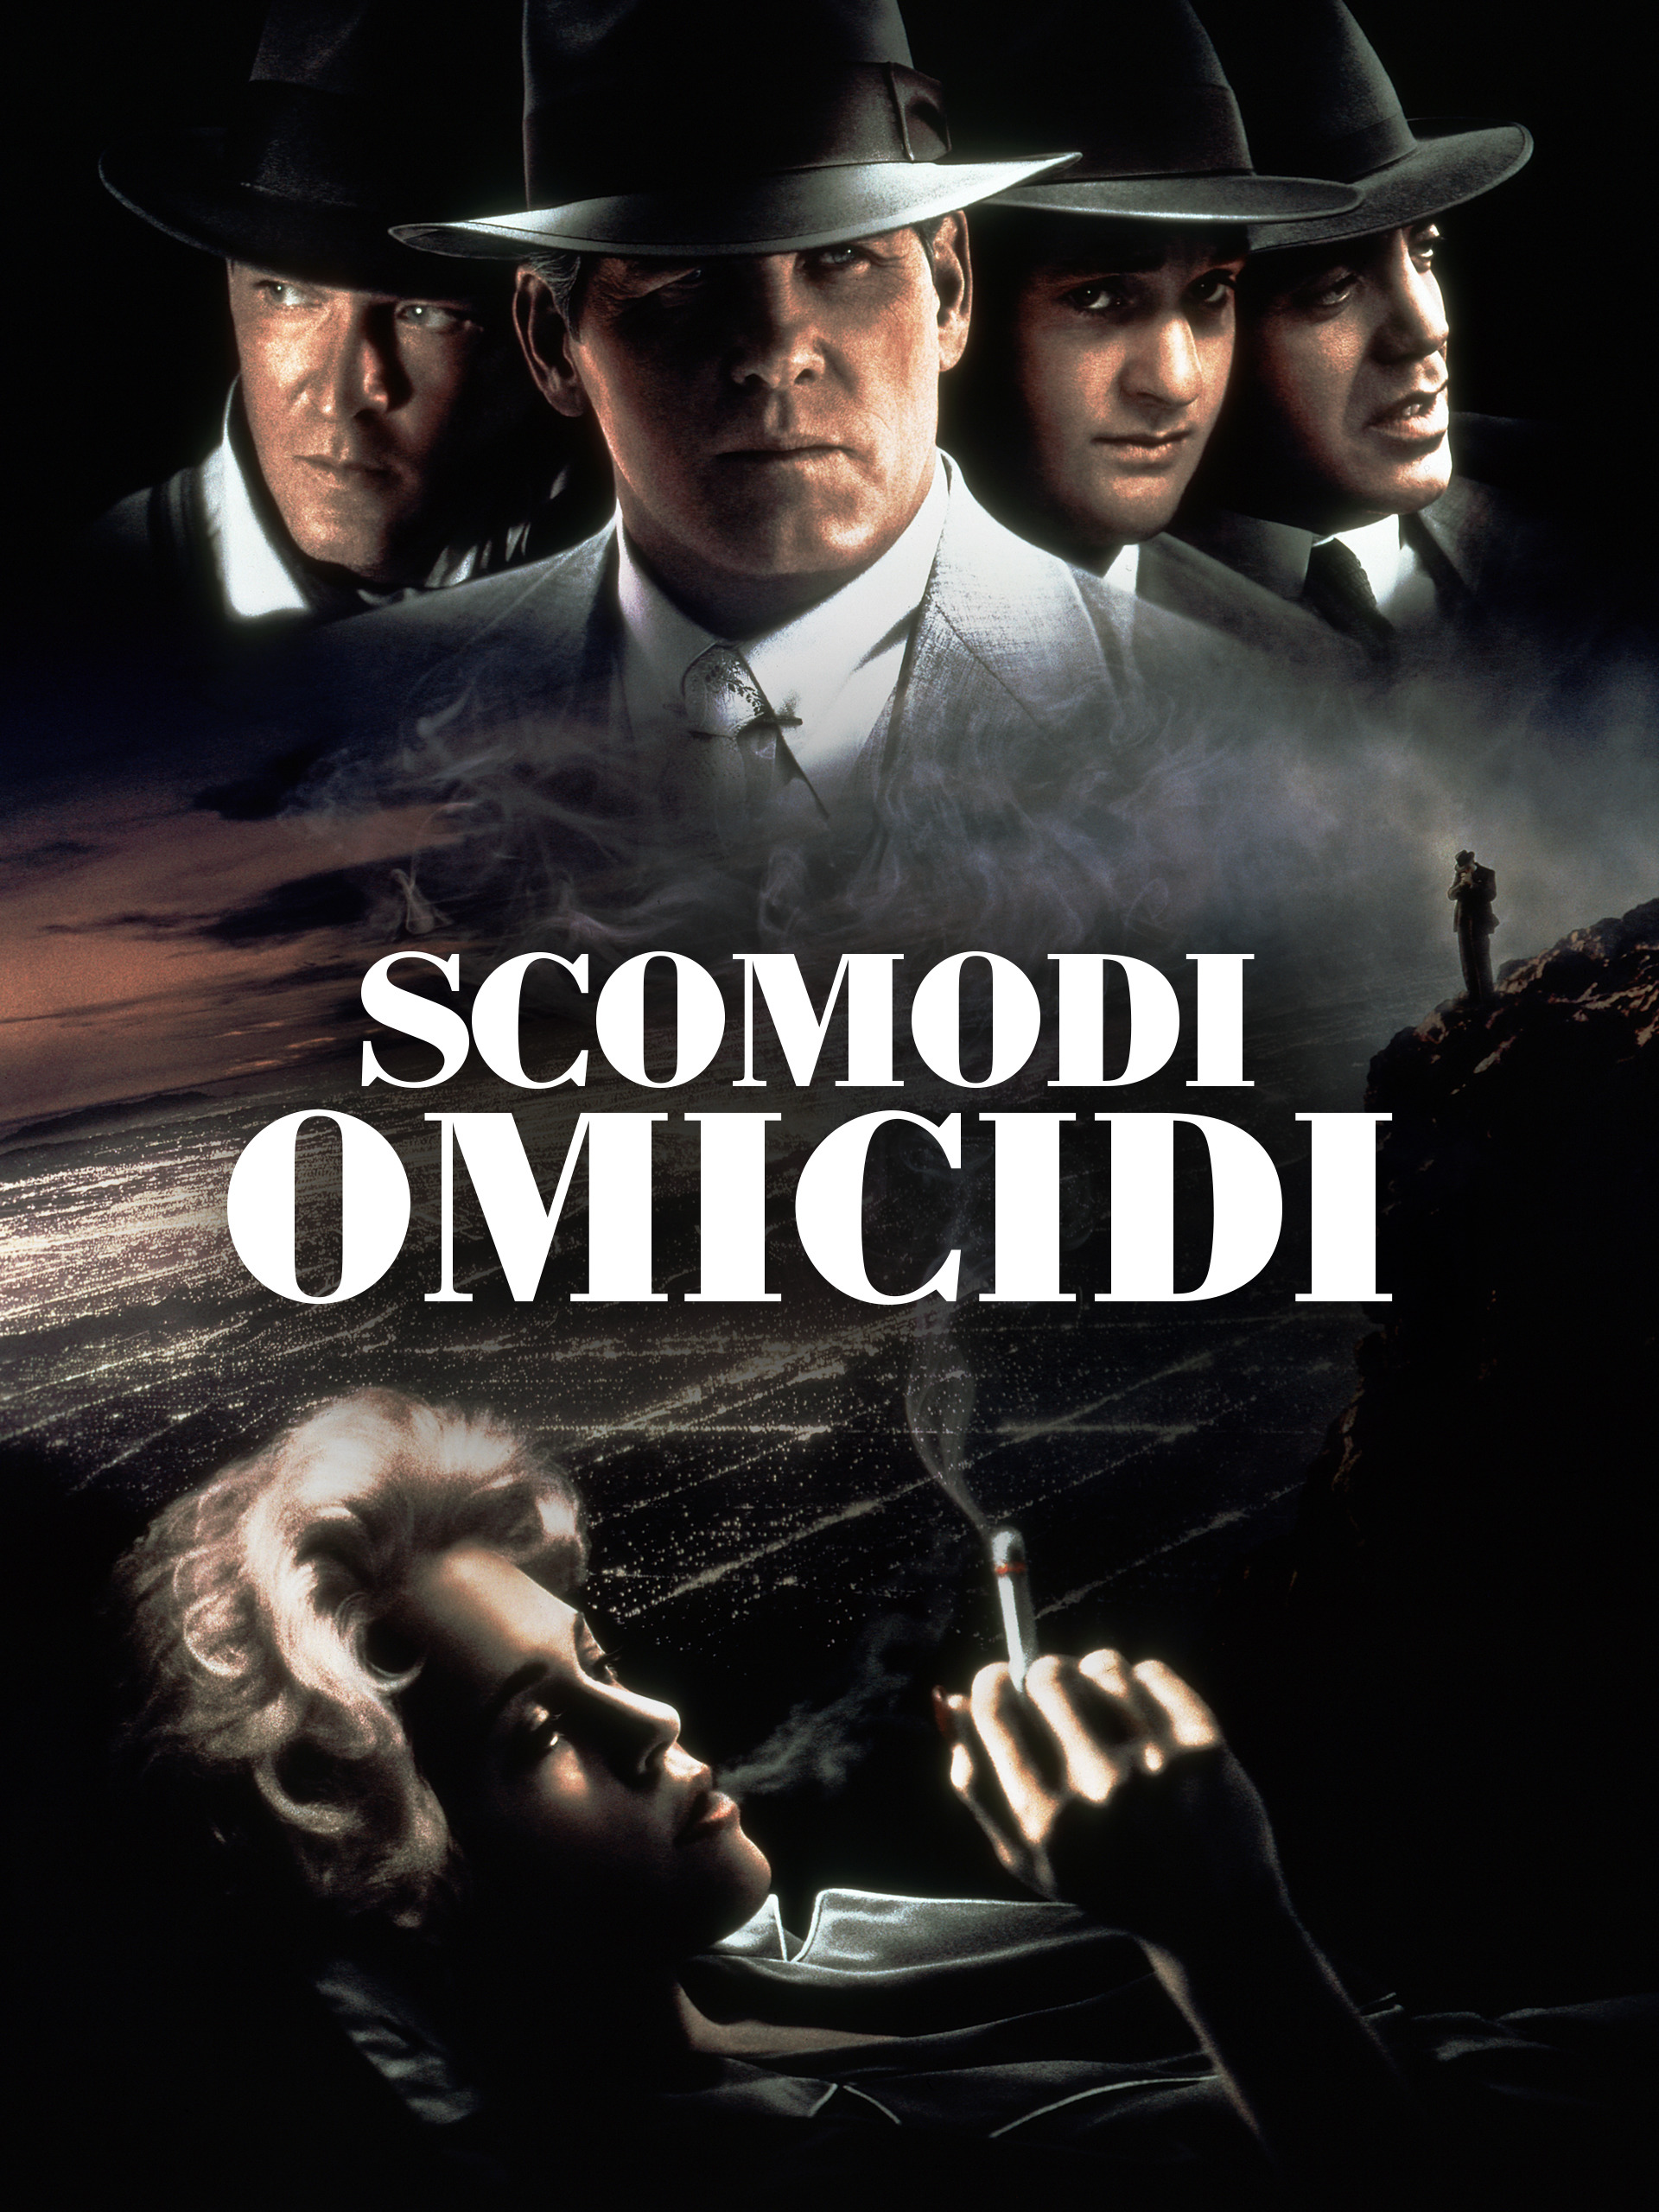 Scomodi omicidi (1996)